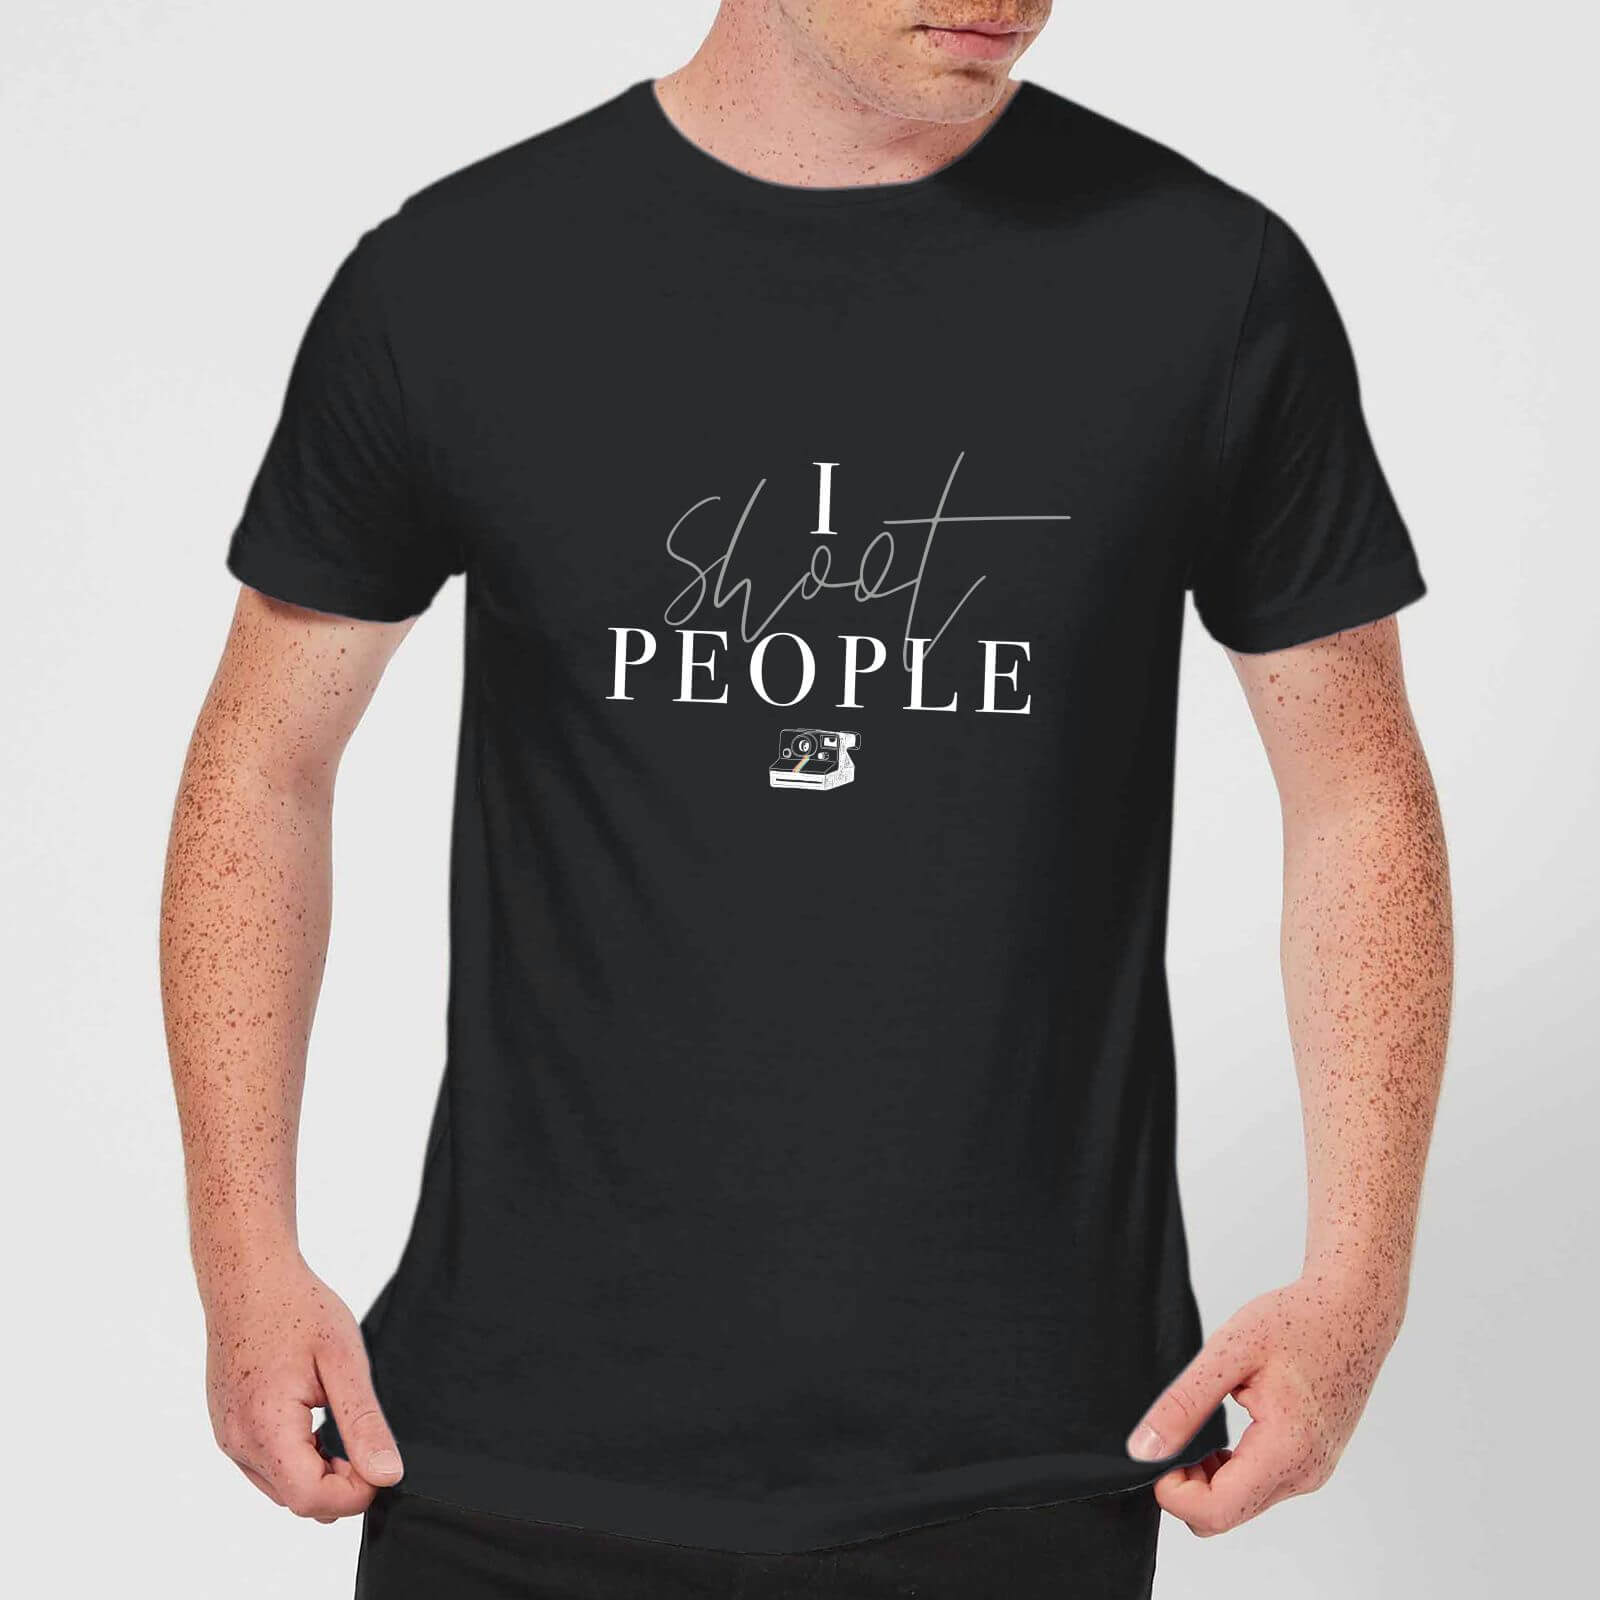 I Shoot People T-Shirt - Black - M - Black